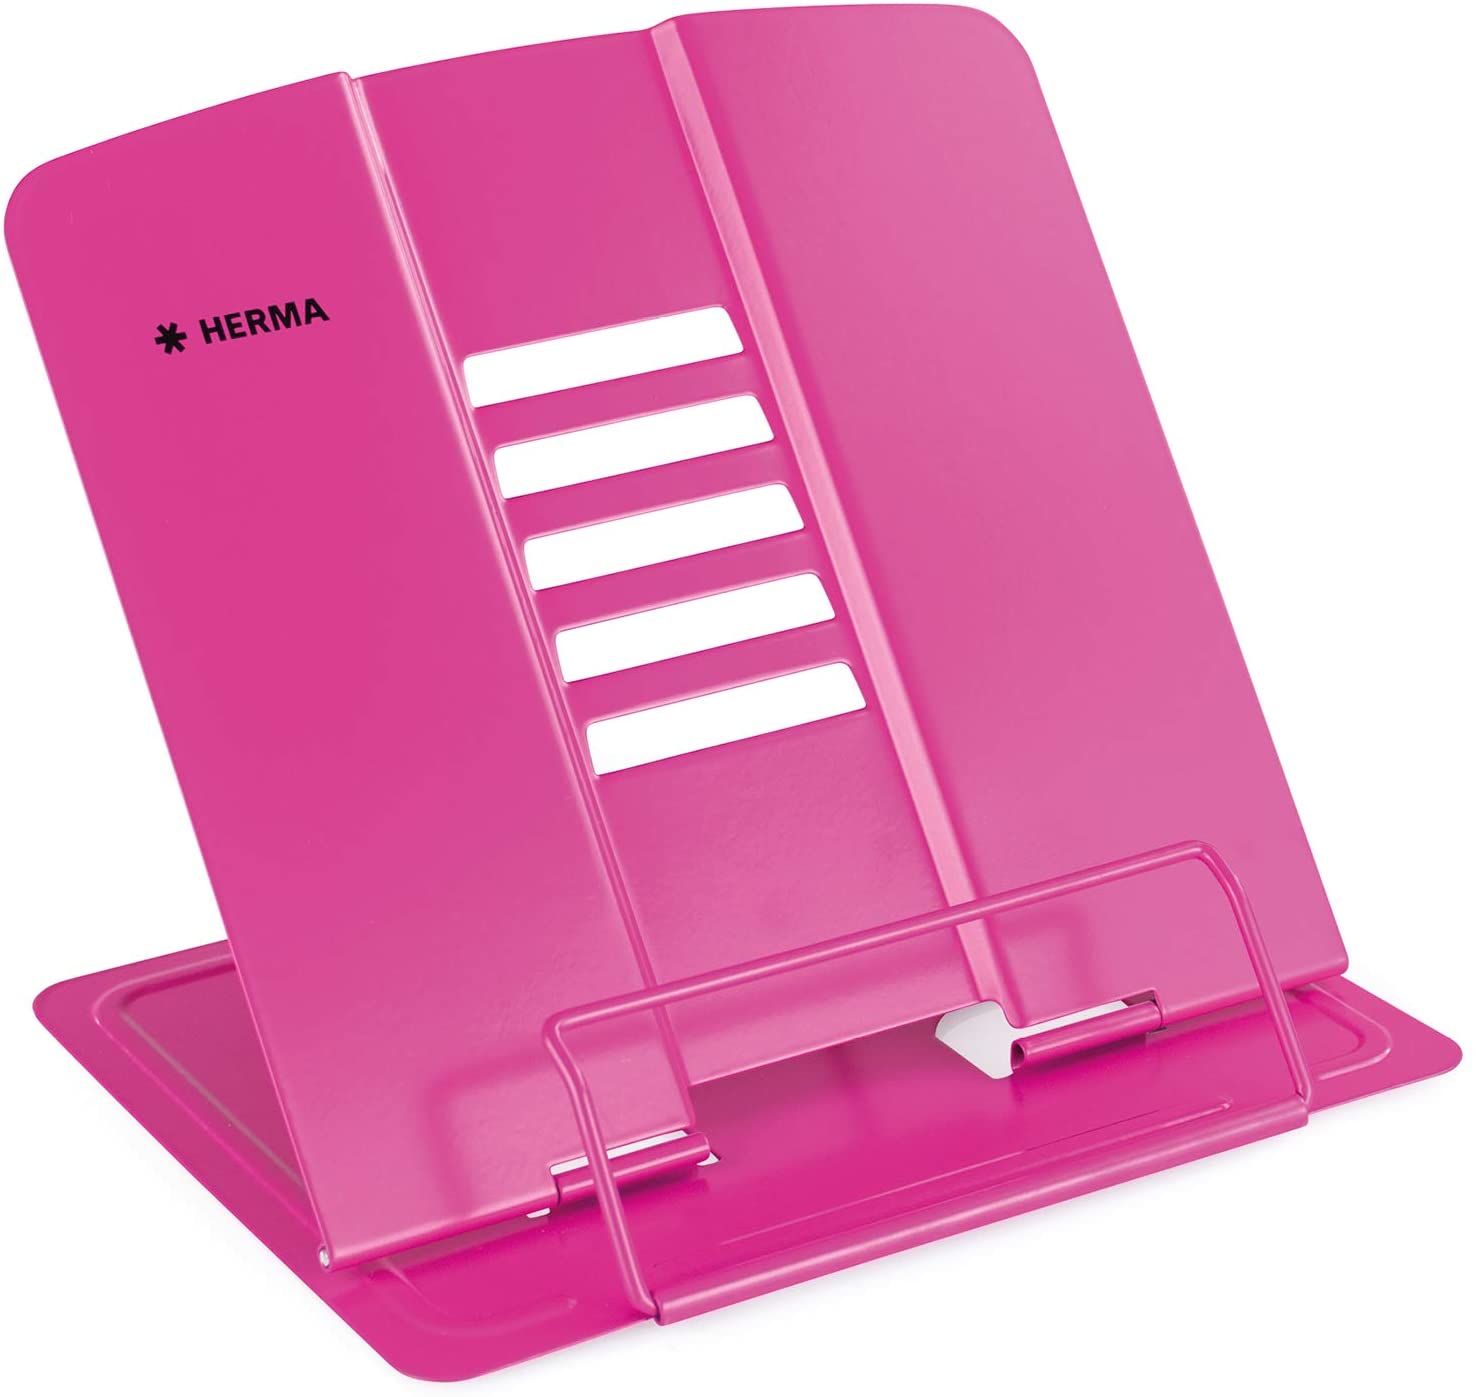 HERMA Lesestnder XL, aus Metall, pink